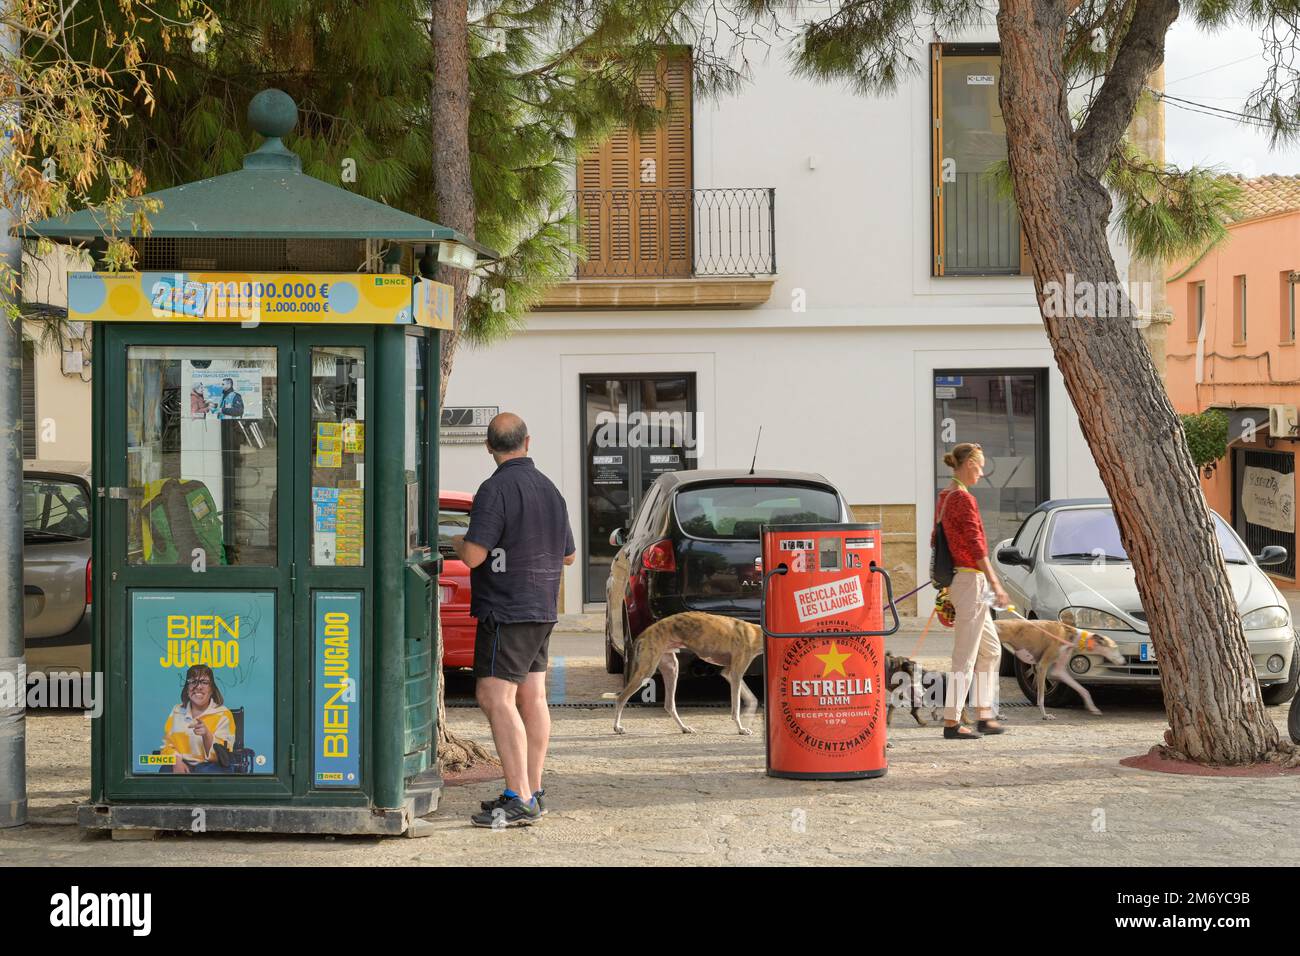 Lottostand, Straßenszene, Marktplatz, Altstadt, Andratx, Mallorca, Spanien Stock Photo